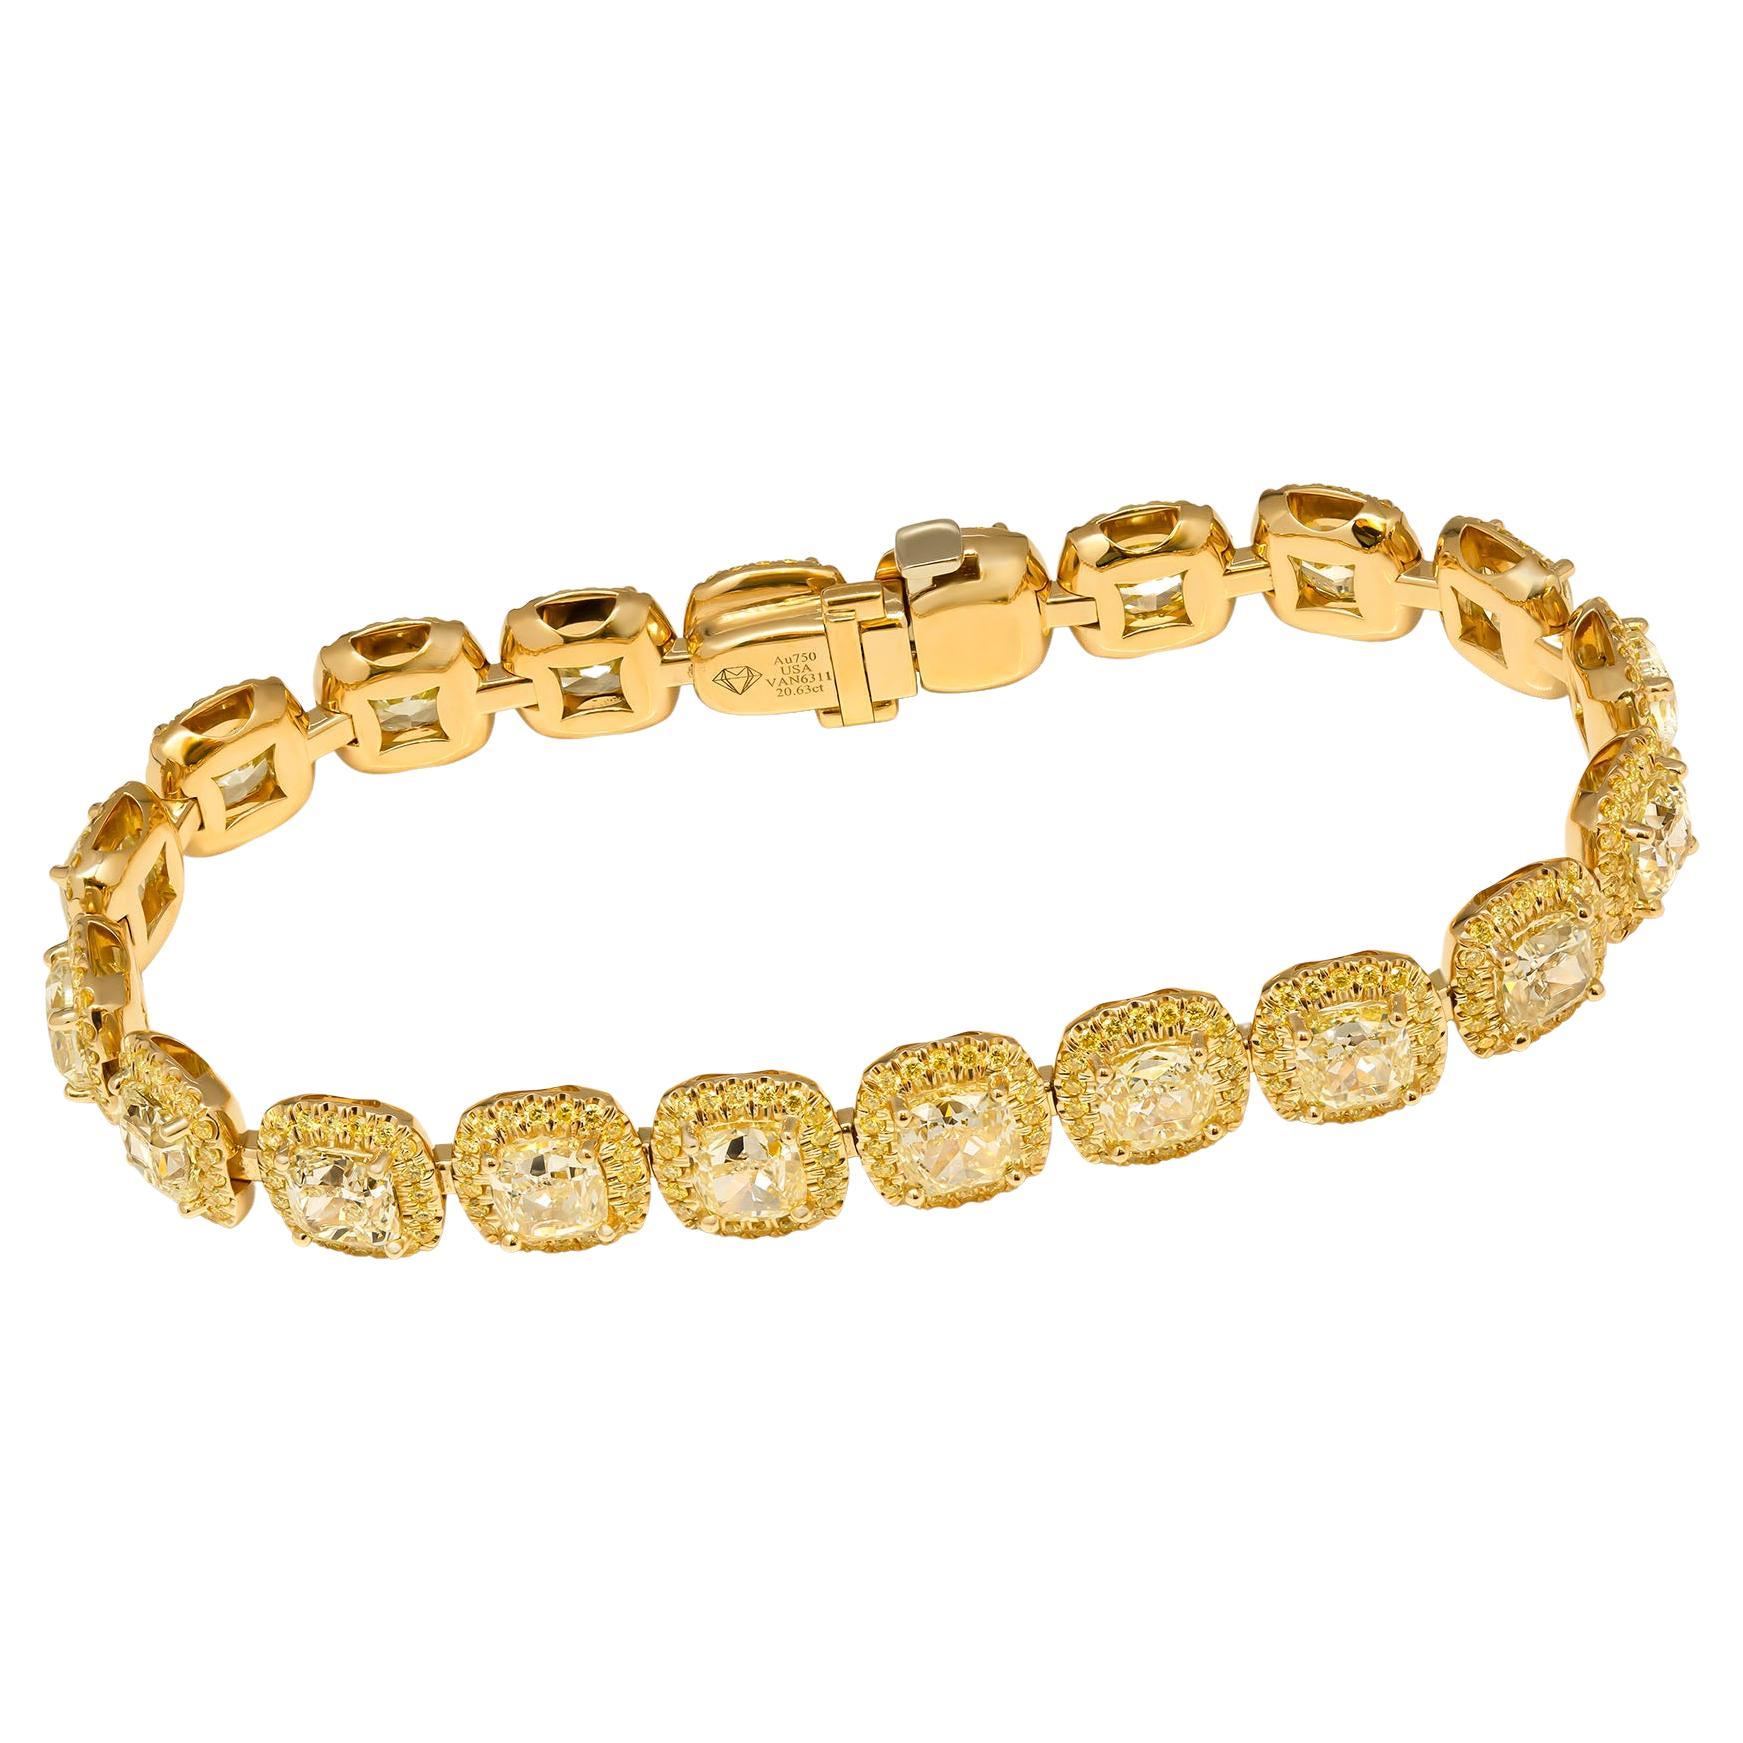 High End Fancy Armband!
Diese luxuriöse Fancy Yellow Diamond Armband in 18K Gelbgold gefertigt, mit 20 großen Cushion Cuts gelben Diamanten, ist jeder Diamant 1,00 +ct im Durchschnitt (Gesamtgewicht von 20,63 Karat).
Zarter Heiligenschein um  jeder